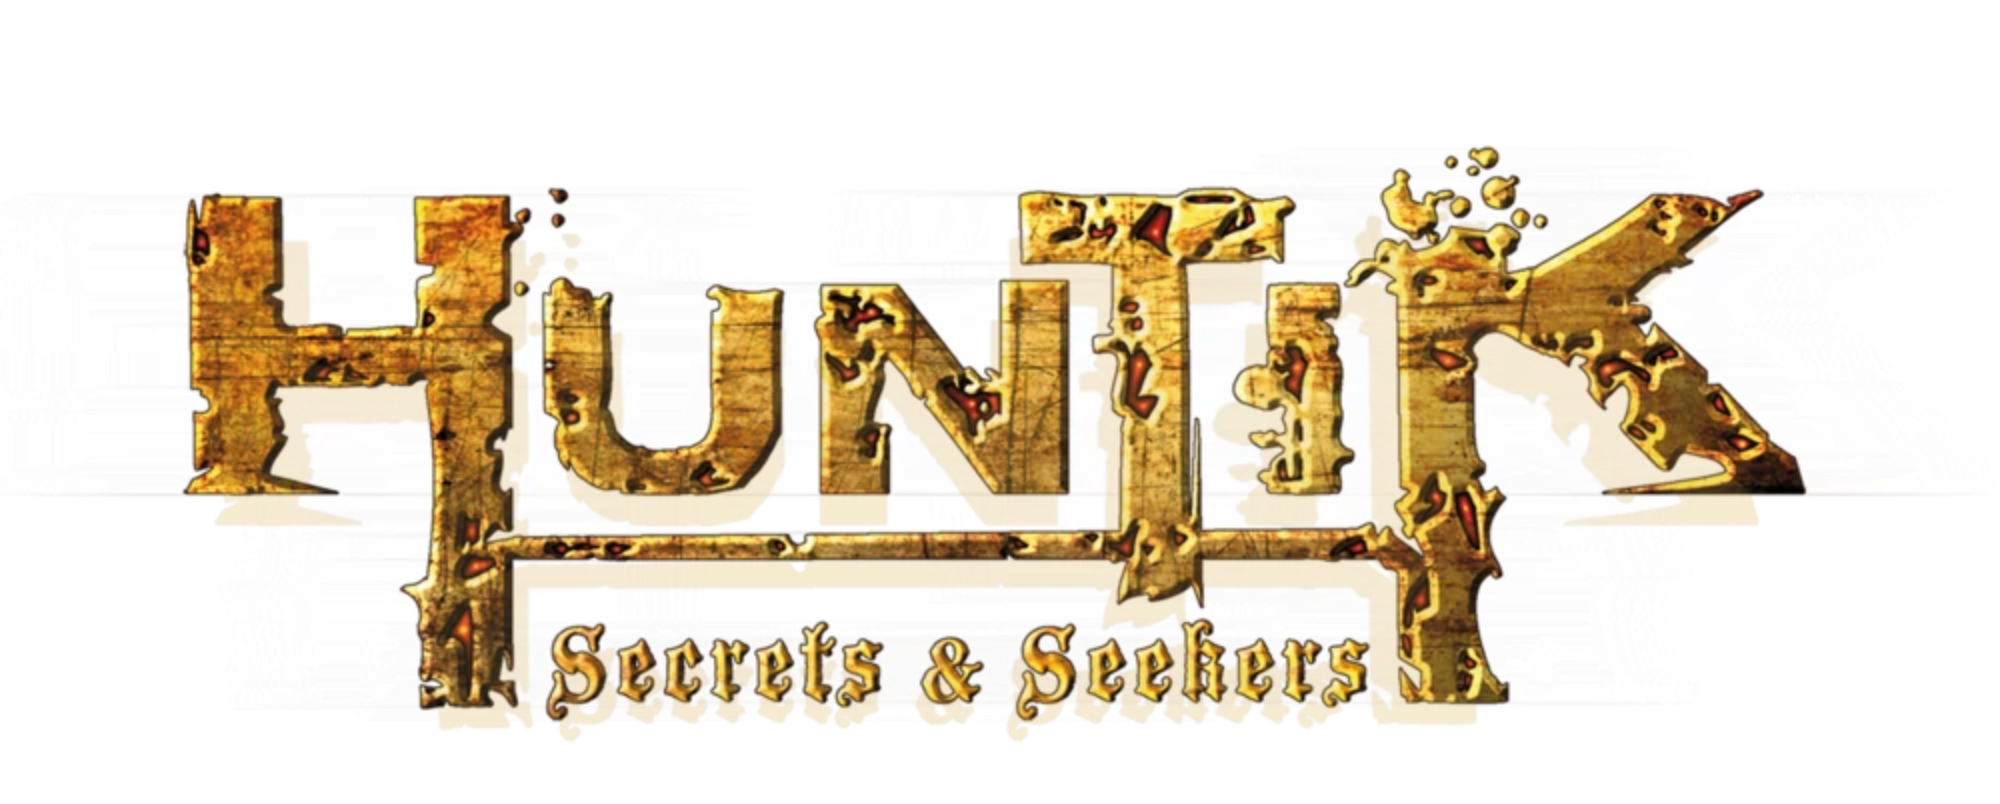 Huntik: Secrets & Seekers